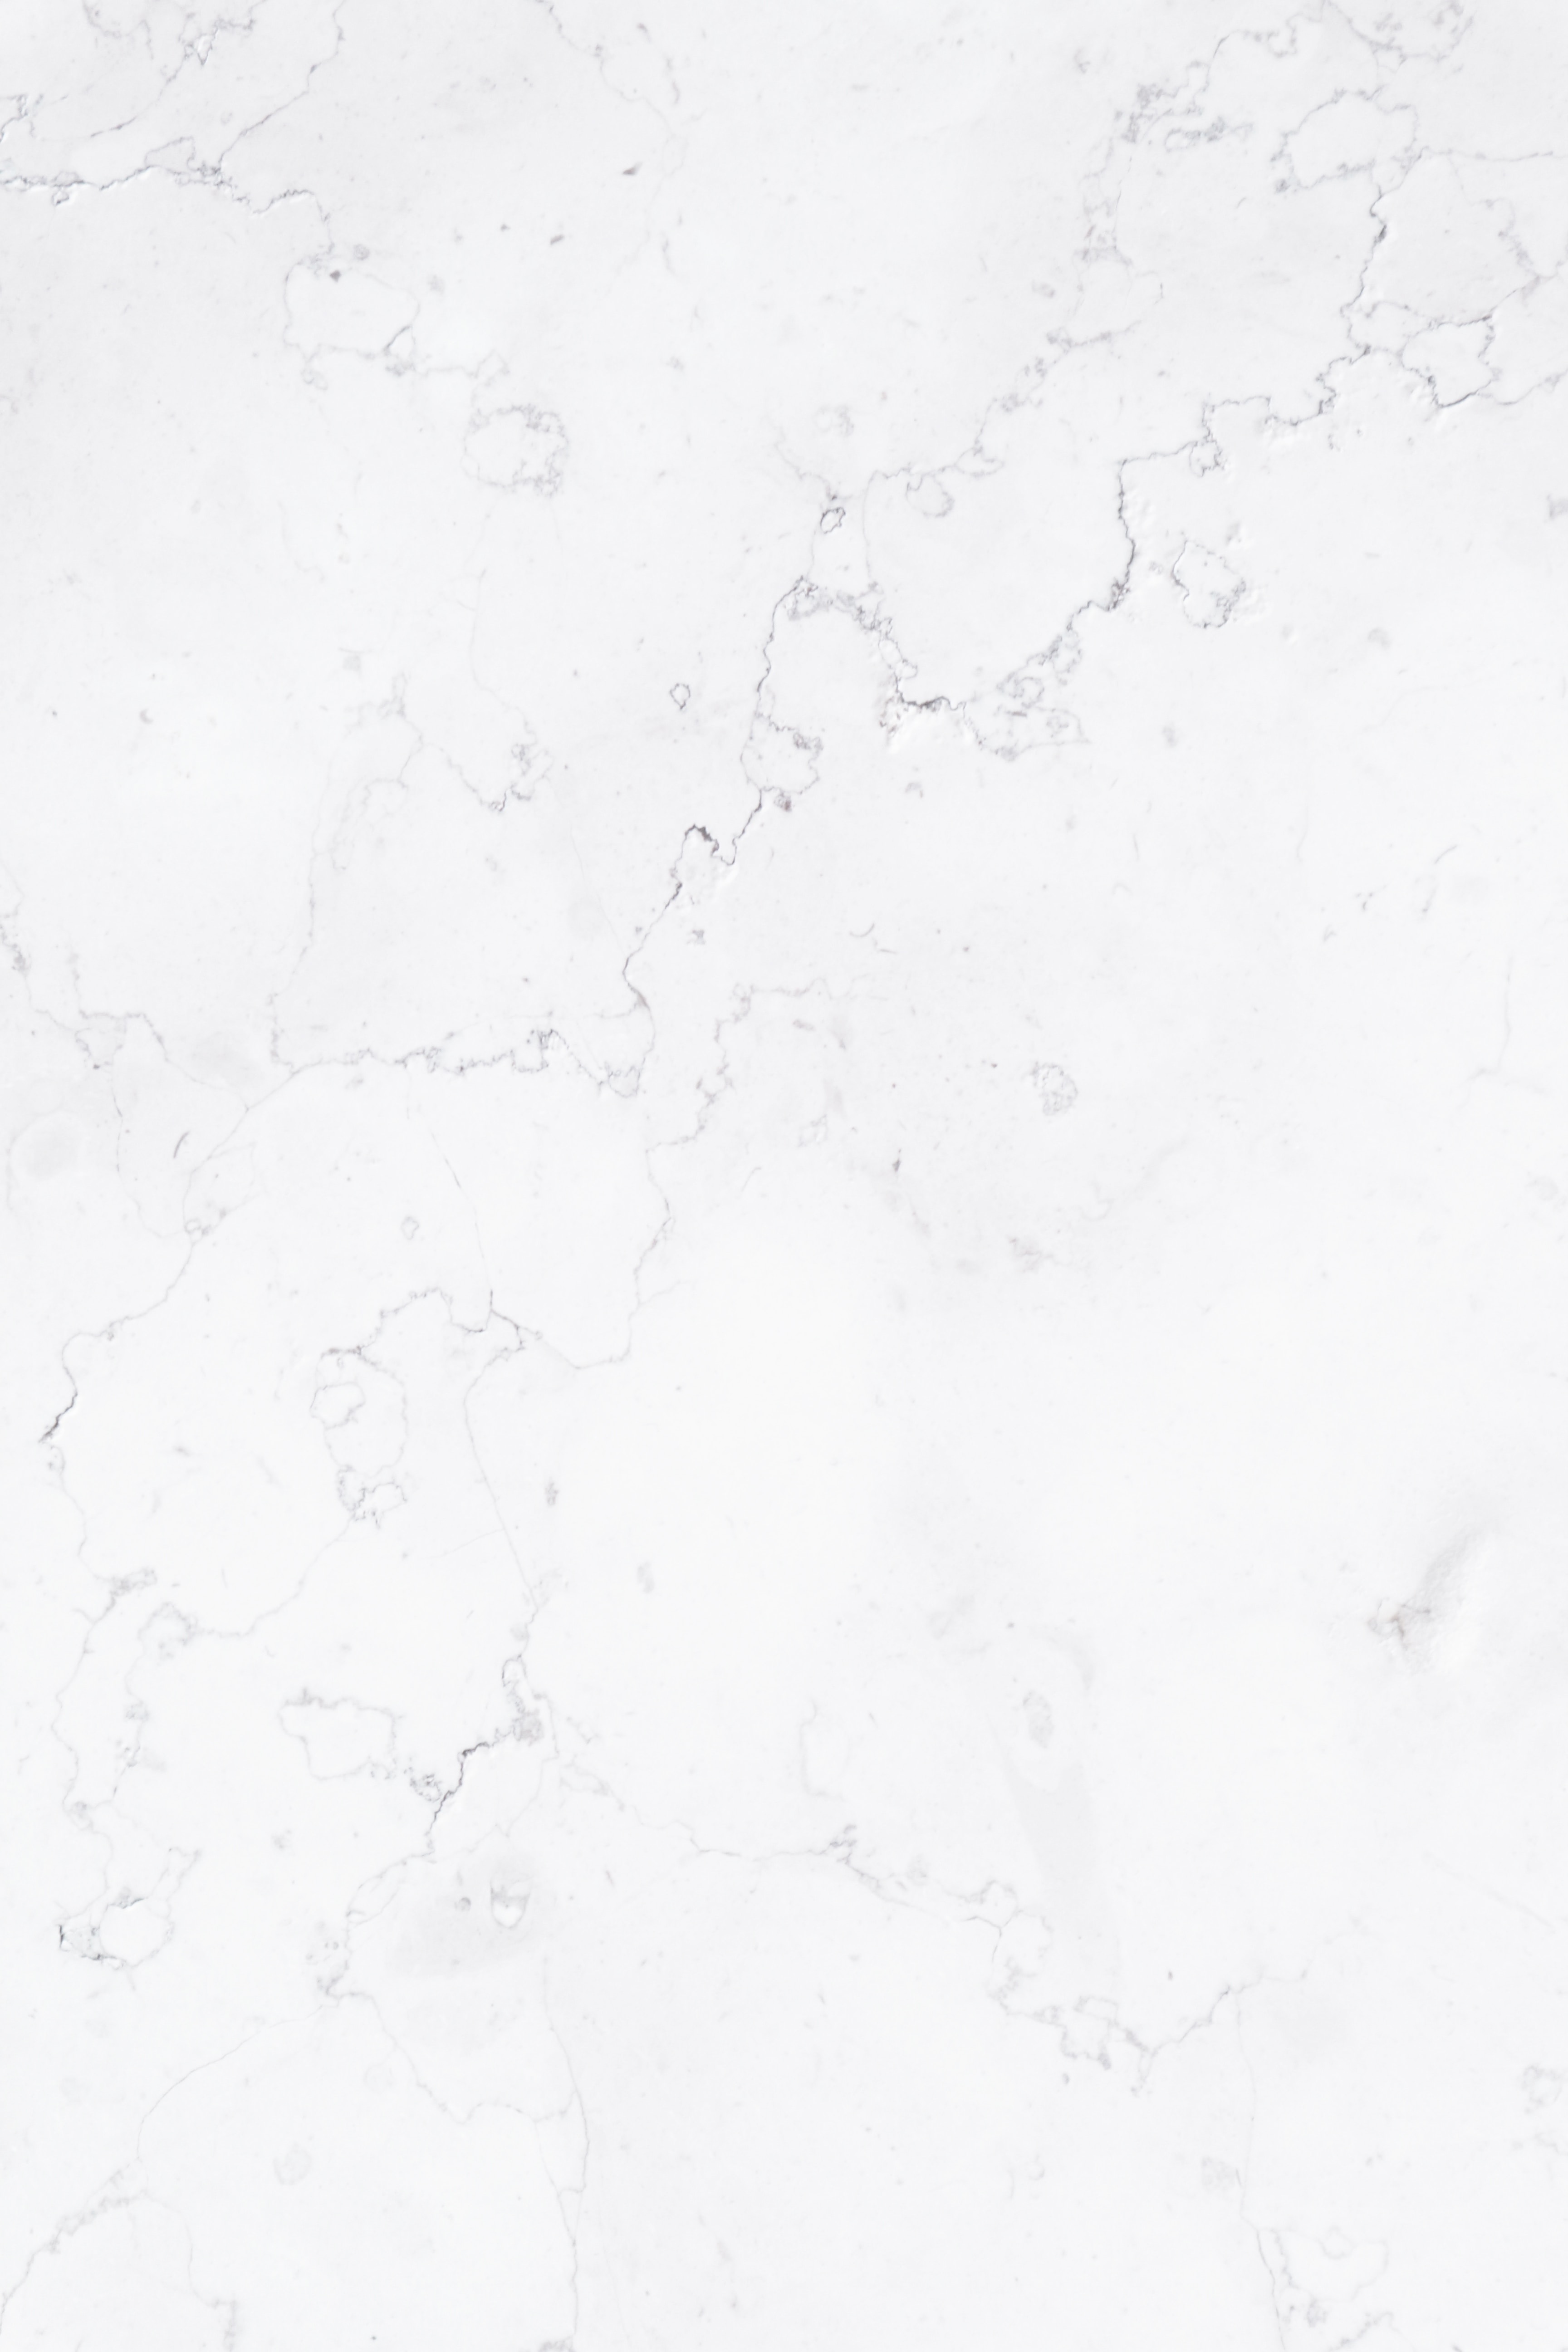 texture, white, textures, marble Free Stock Photo